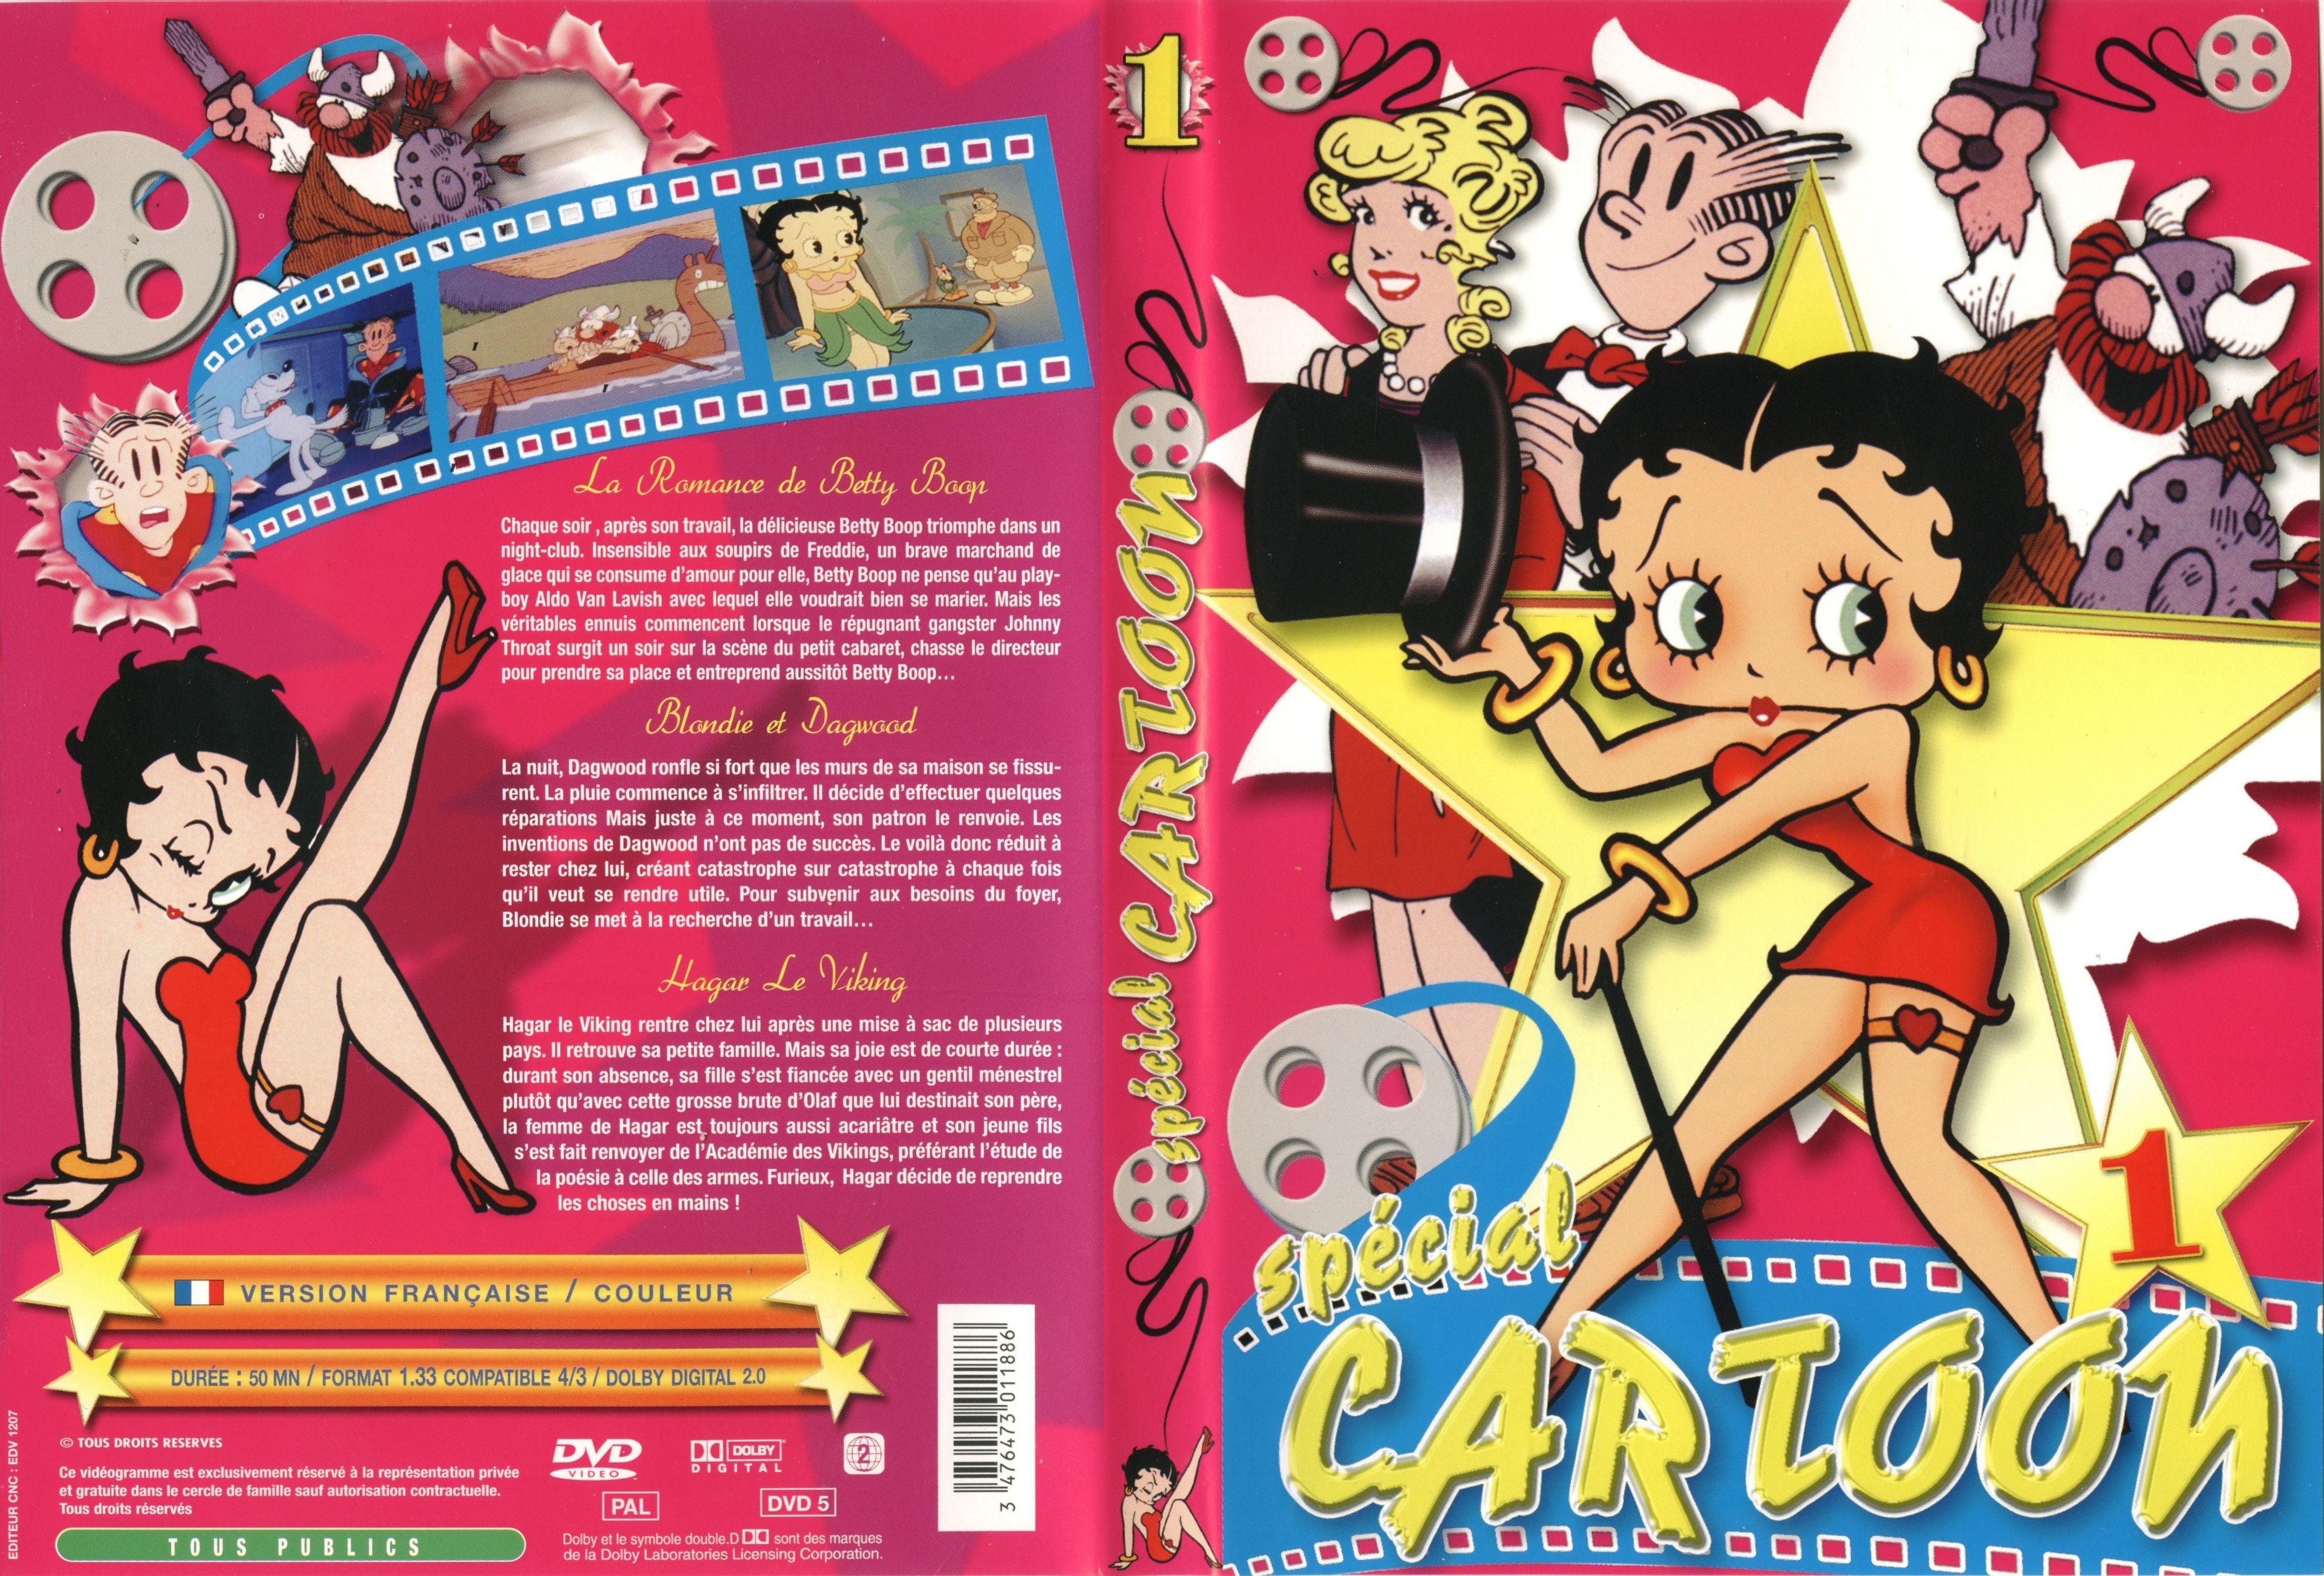 Jaquette DVD Special cartoon vol 1